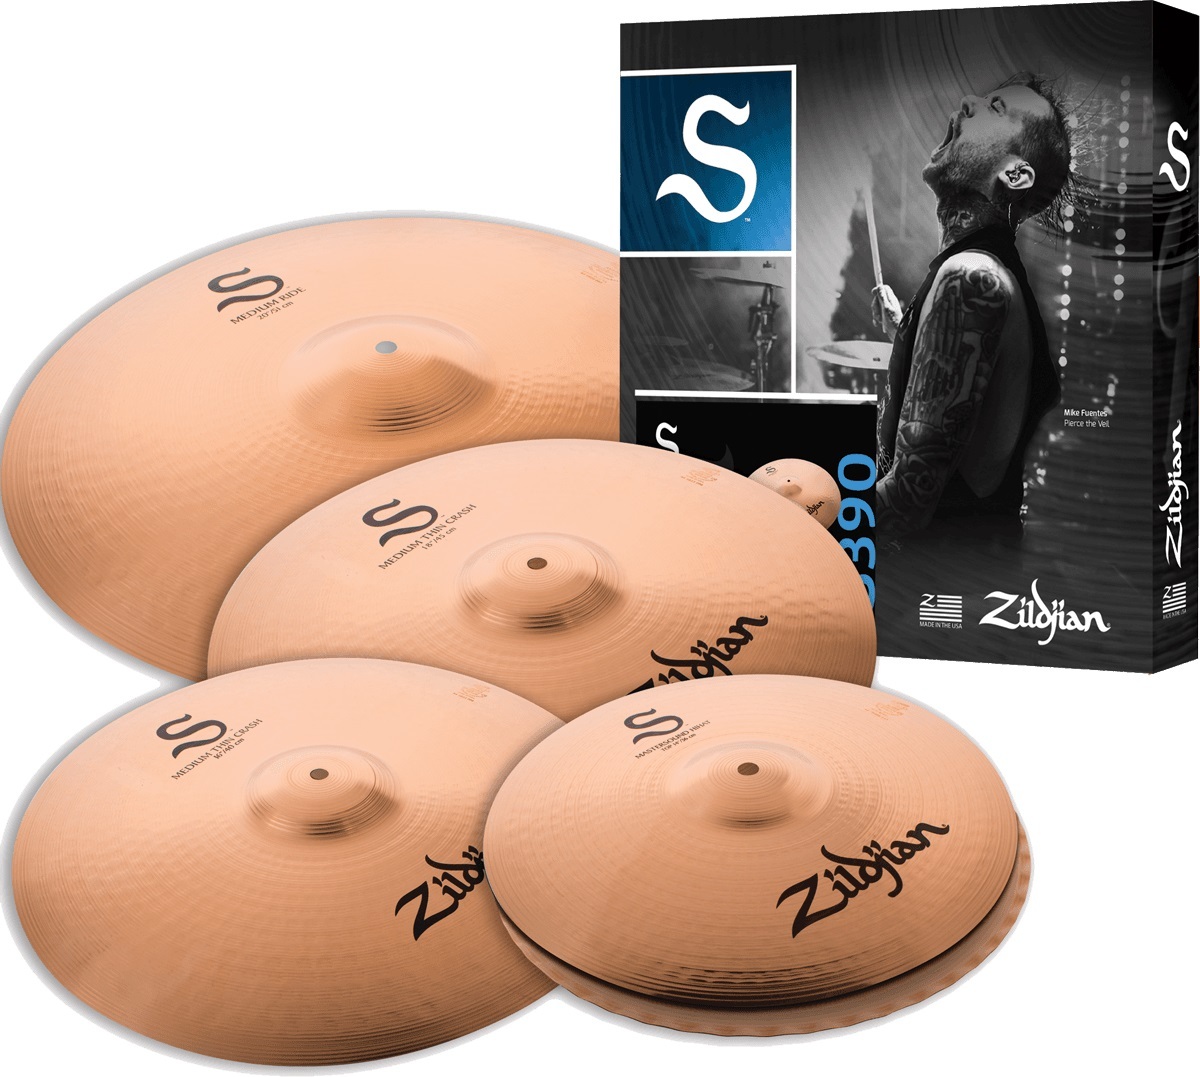 Zildjian S390 - Cymbals set - Main picture